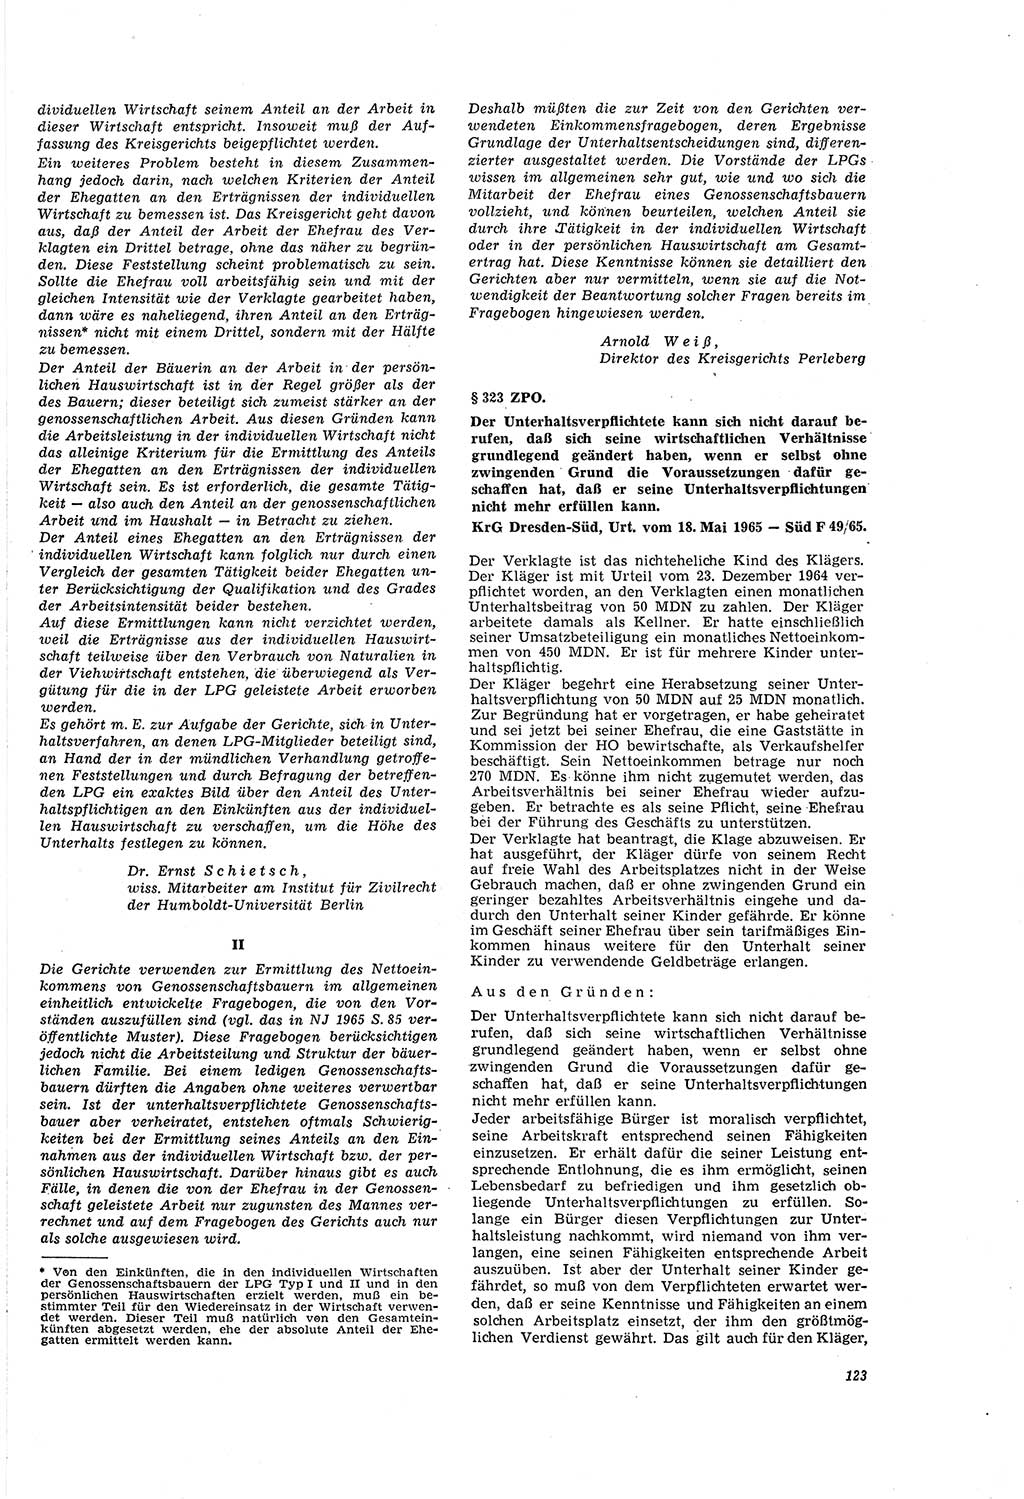 Neue Justiz (NJ), Zeitschrift für Recht und Rechtswissenschaft [Deutsche Demokratische Republik (DDR)], 20. Jahrgang 1966, Seite 123 (NJ DDR 1966, S. 123)